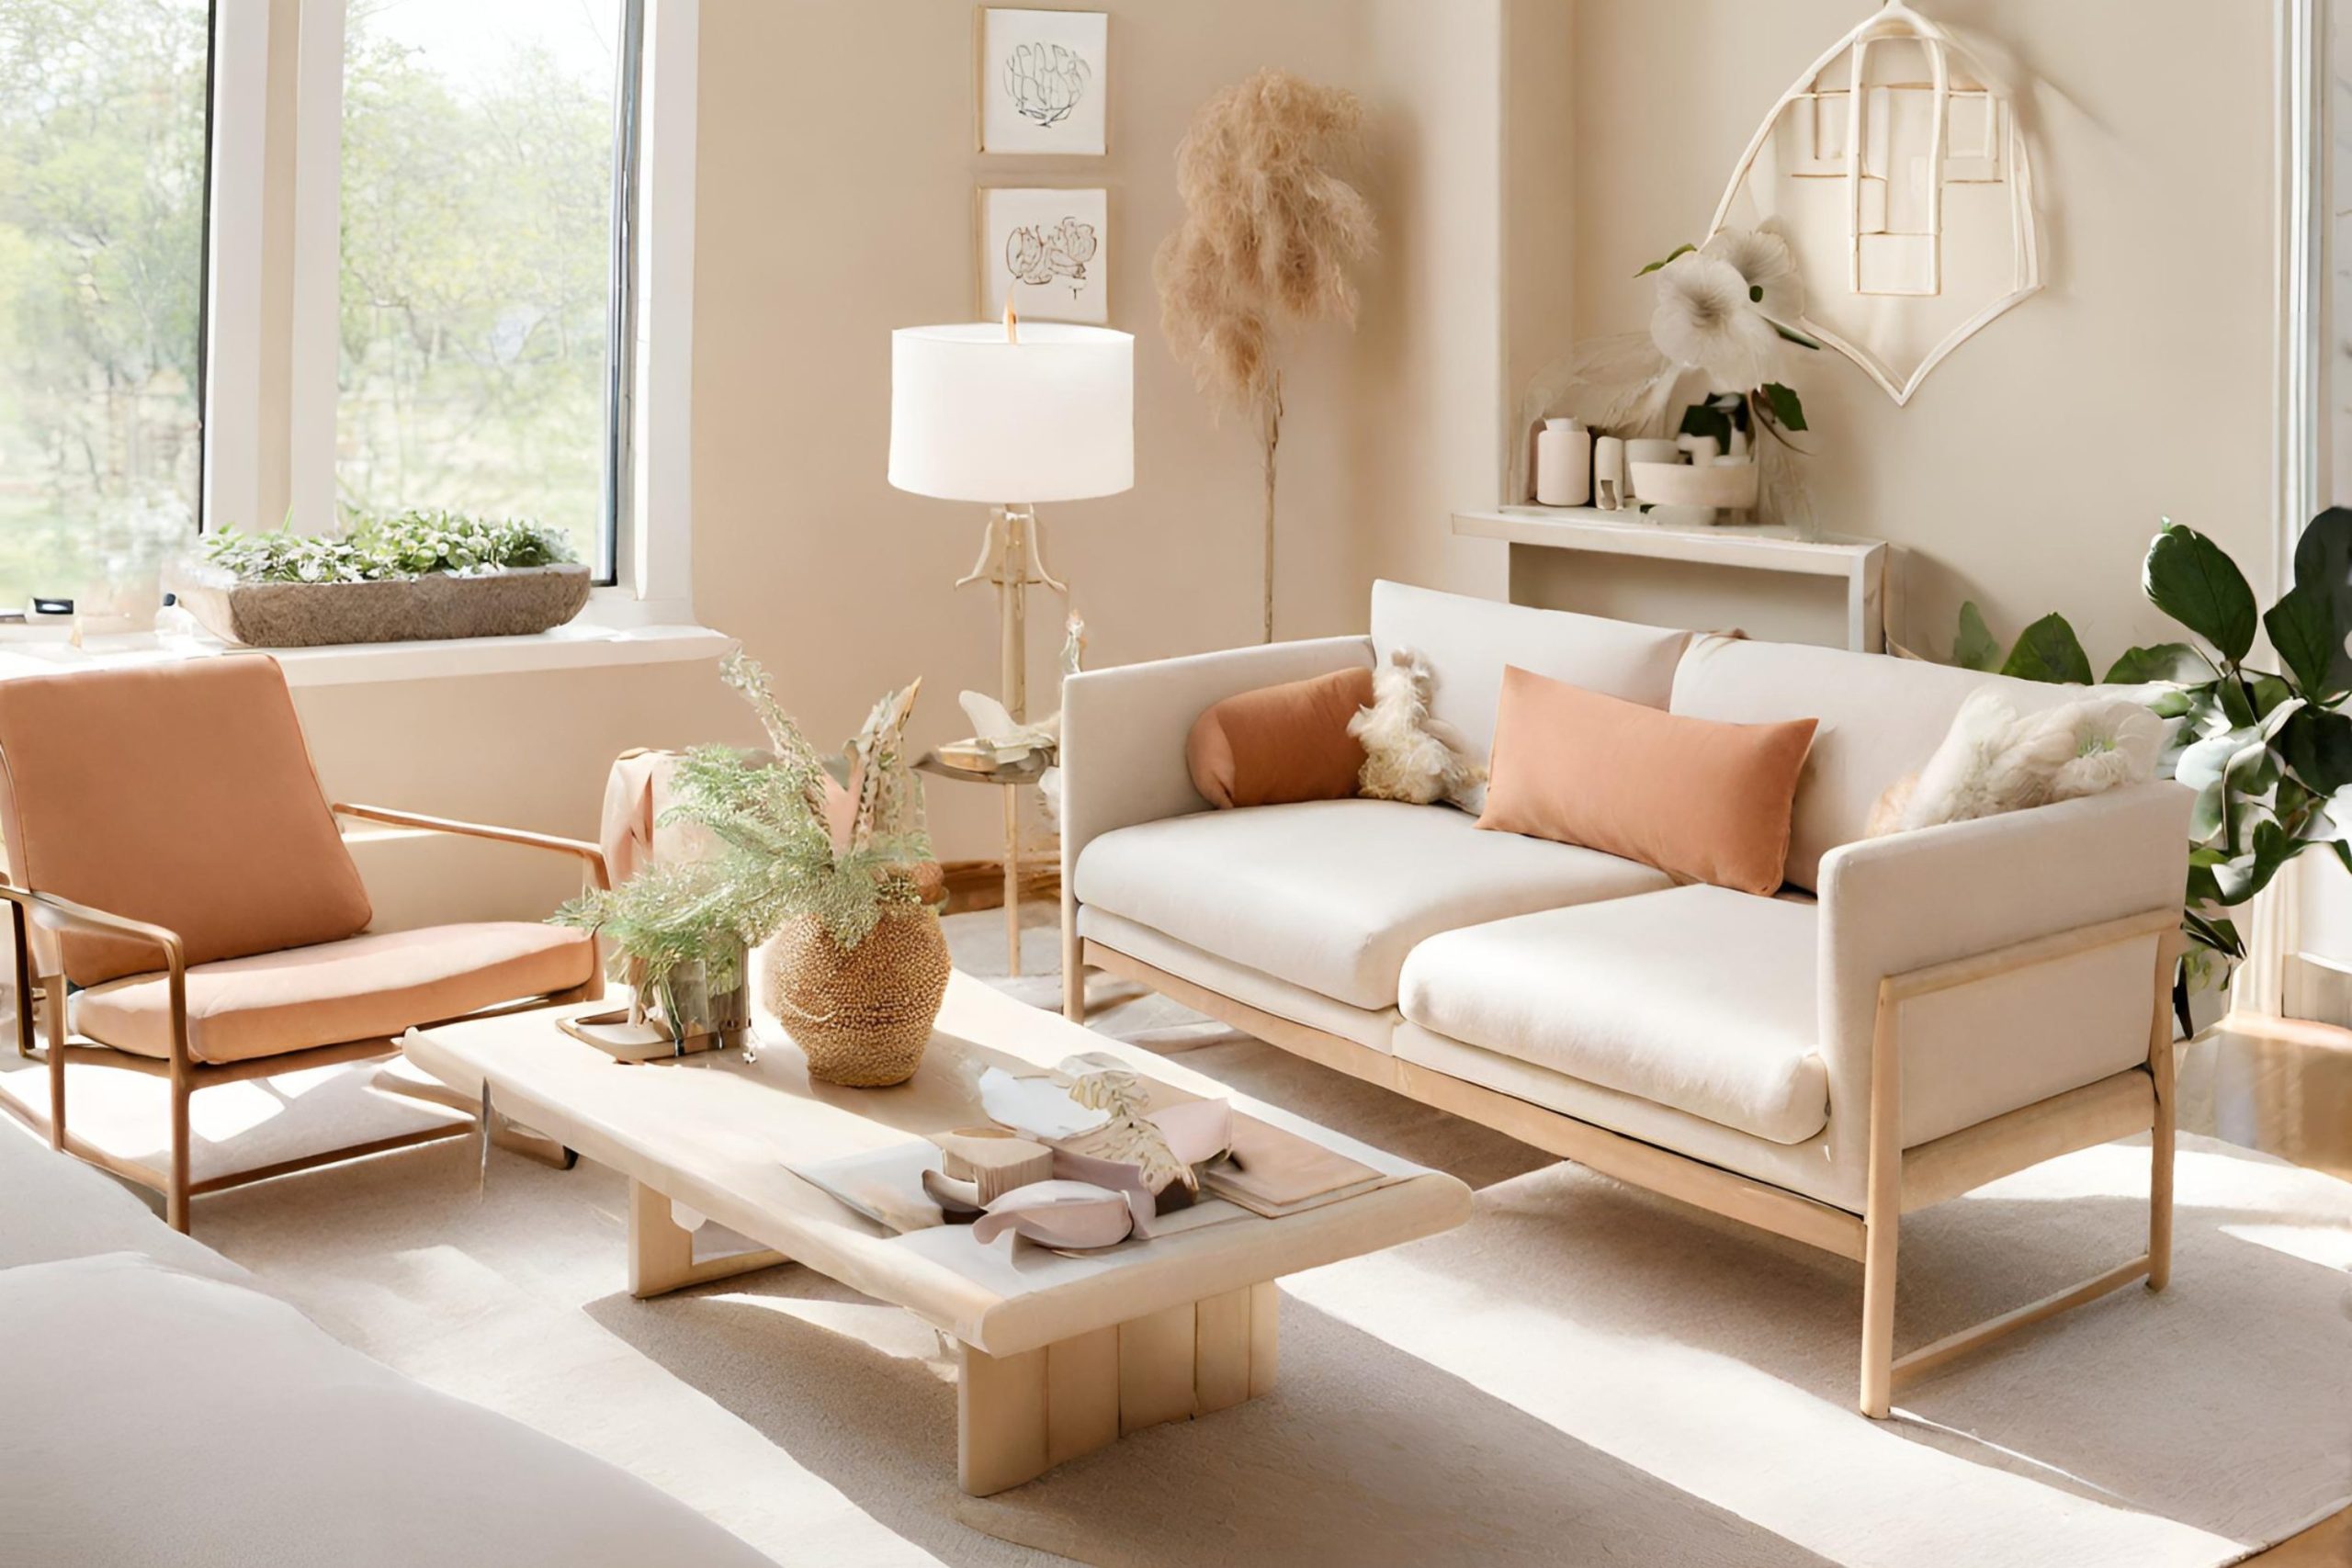 Embrace Lighter-Toned Furniture